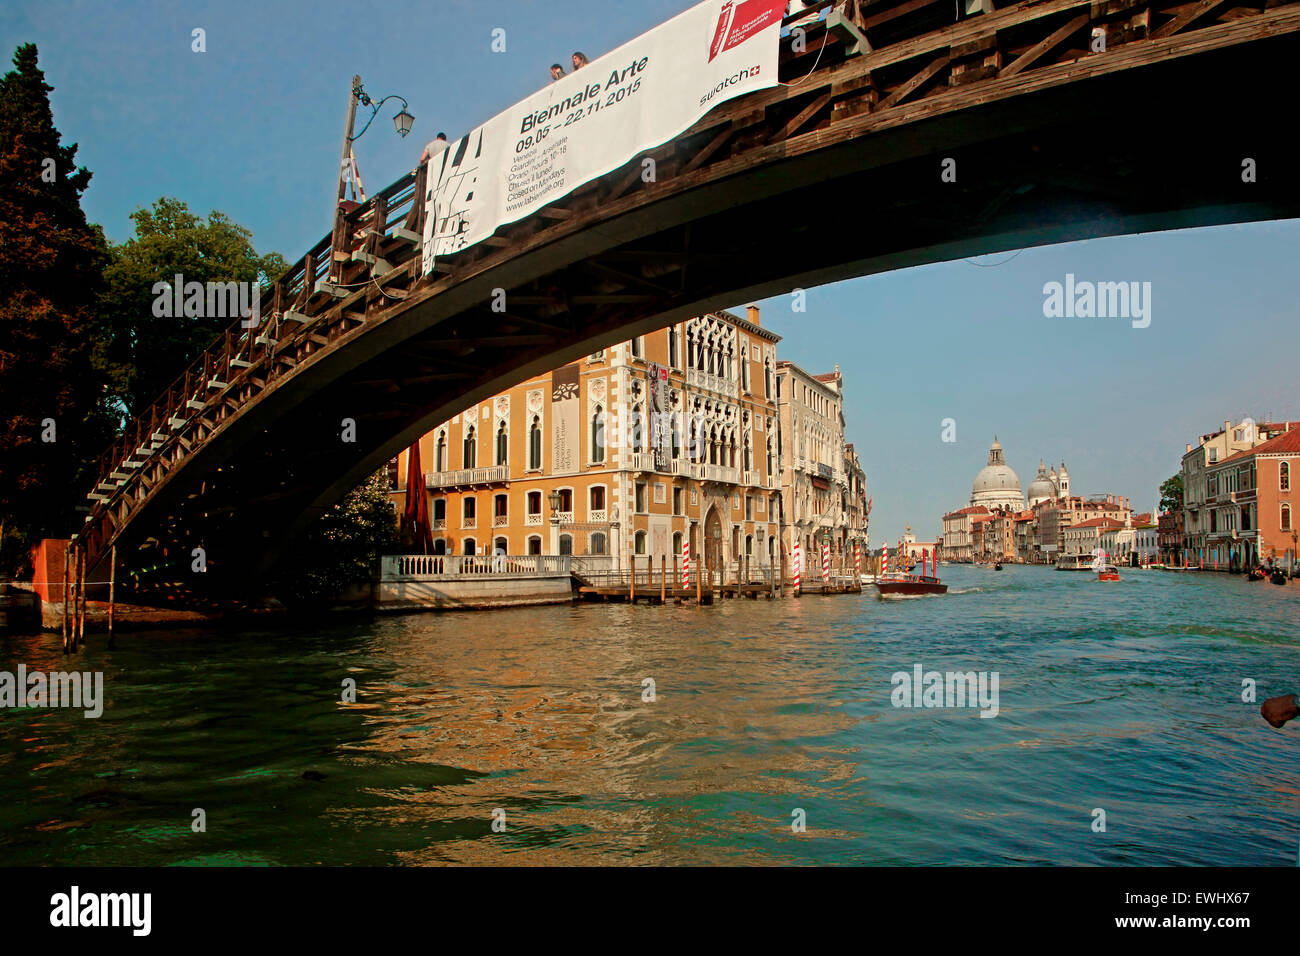 Venezia - Ponte dell'Accademia e Palazzo Cavalli Franchetti-- Ponte dell'Accademia e Palazzo Cavalli-Franchetti Foto Stock